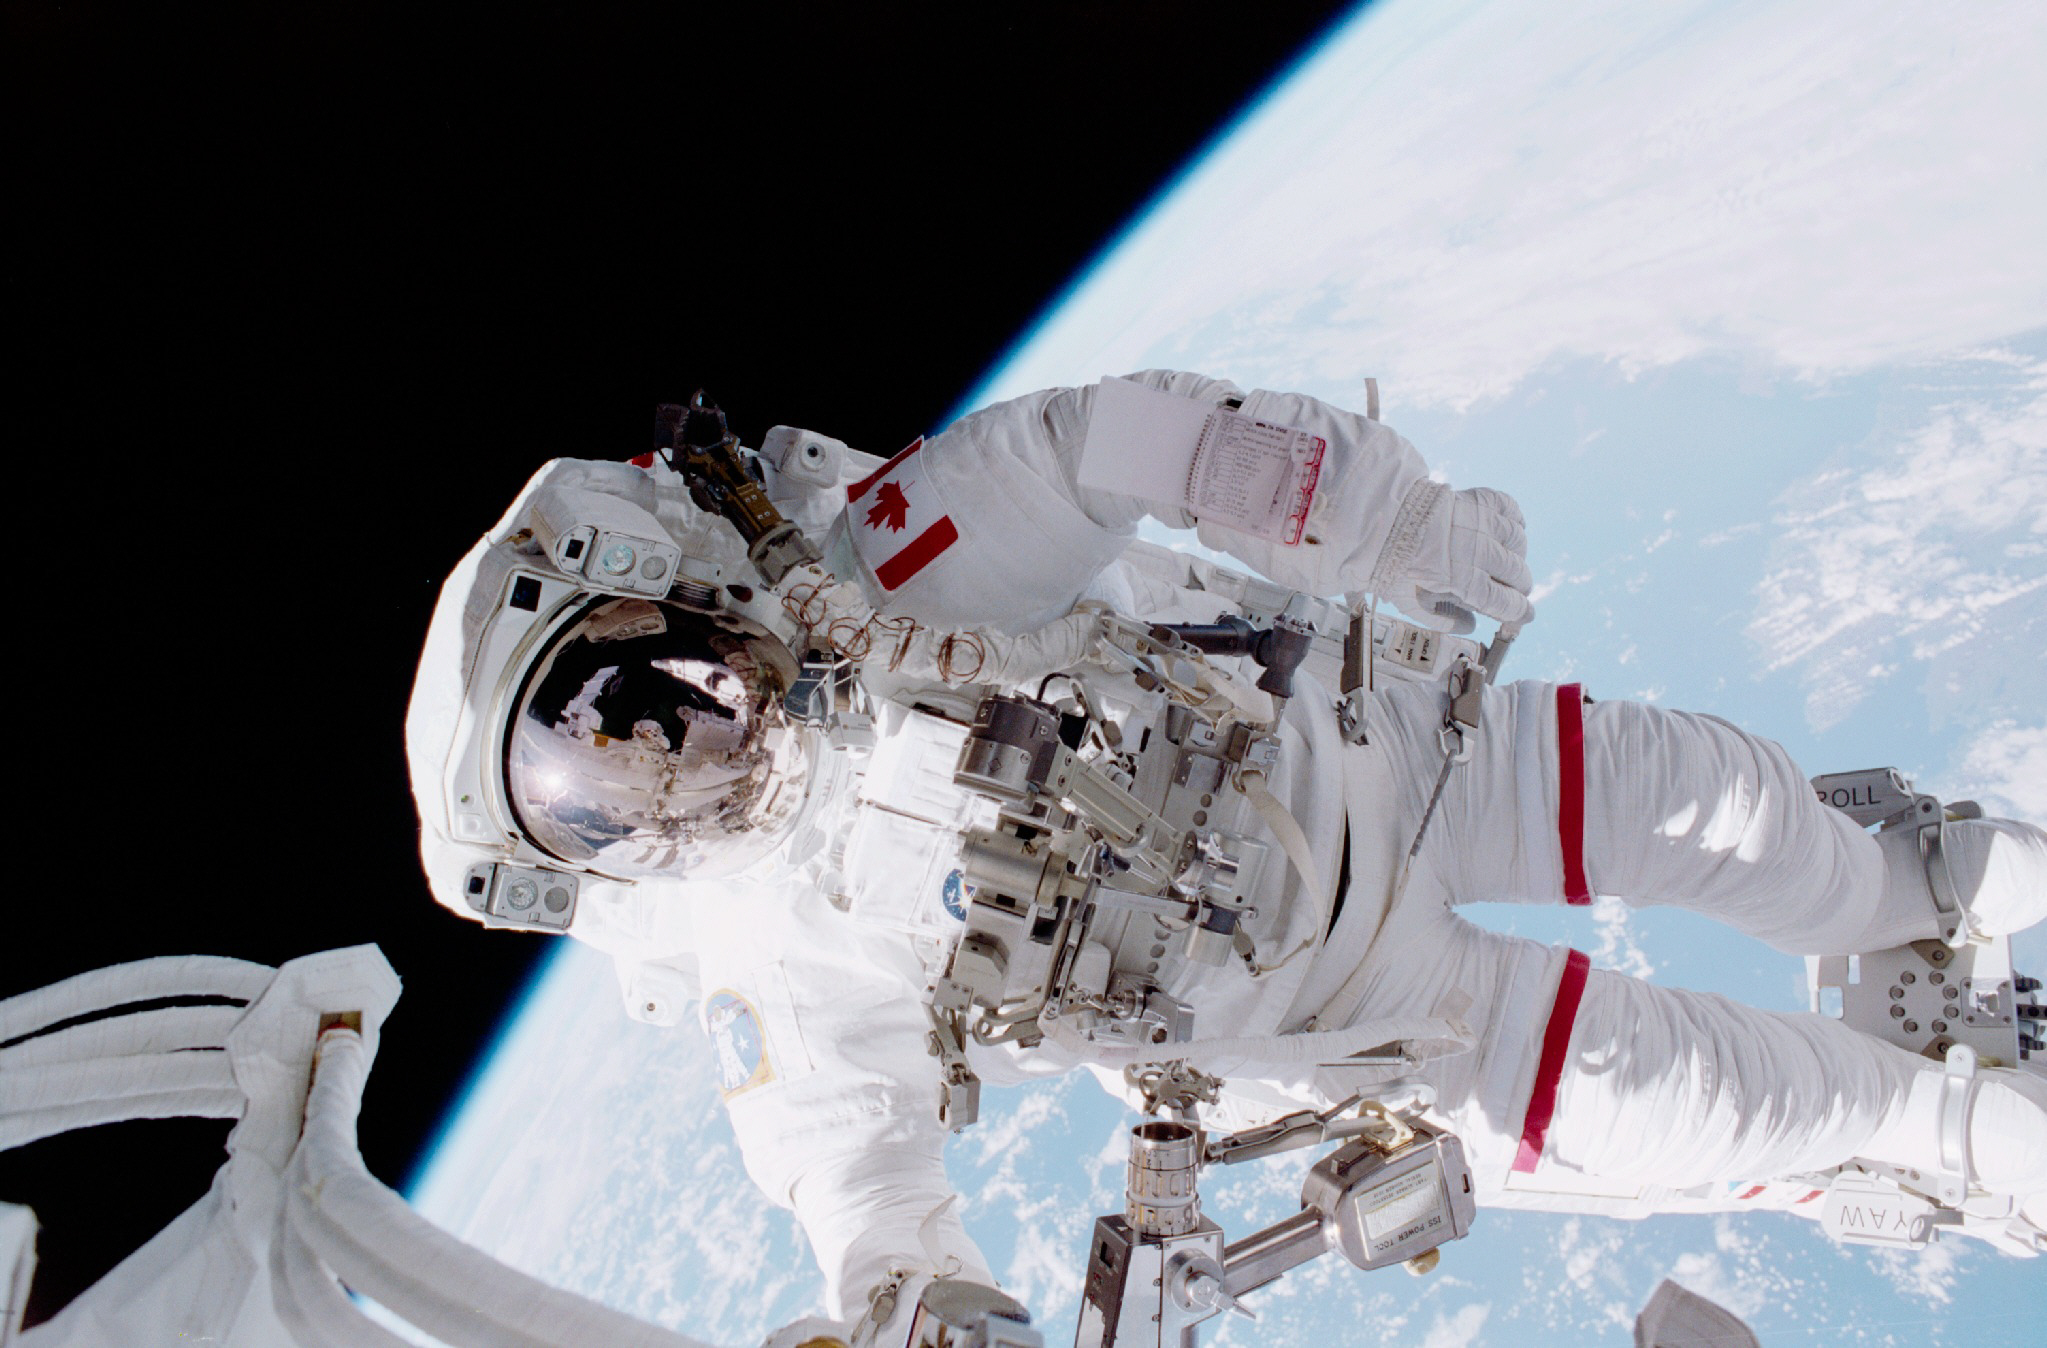 Chris Hadfield med sprehodom v vesolju